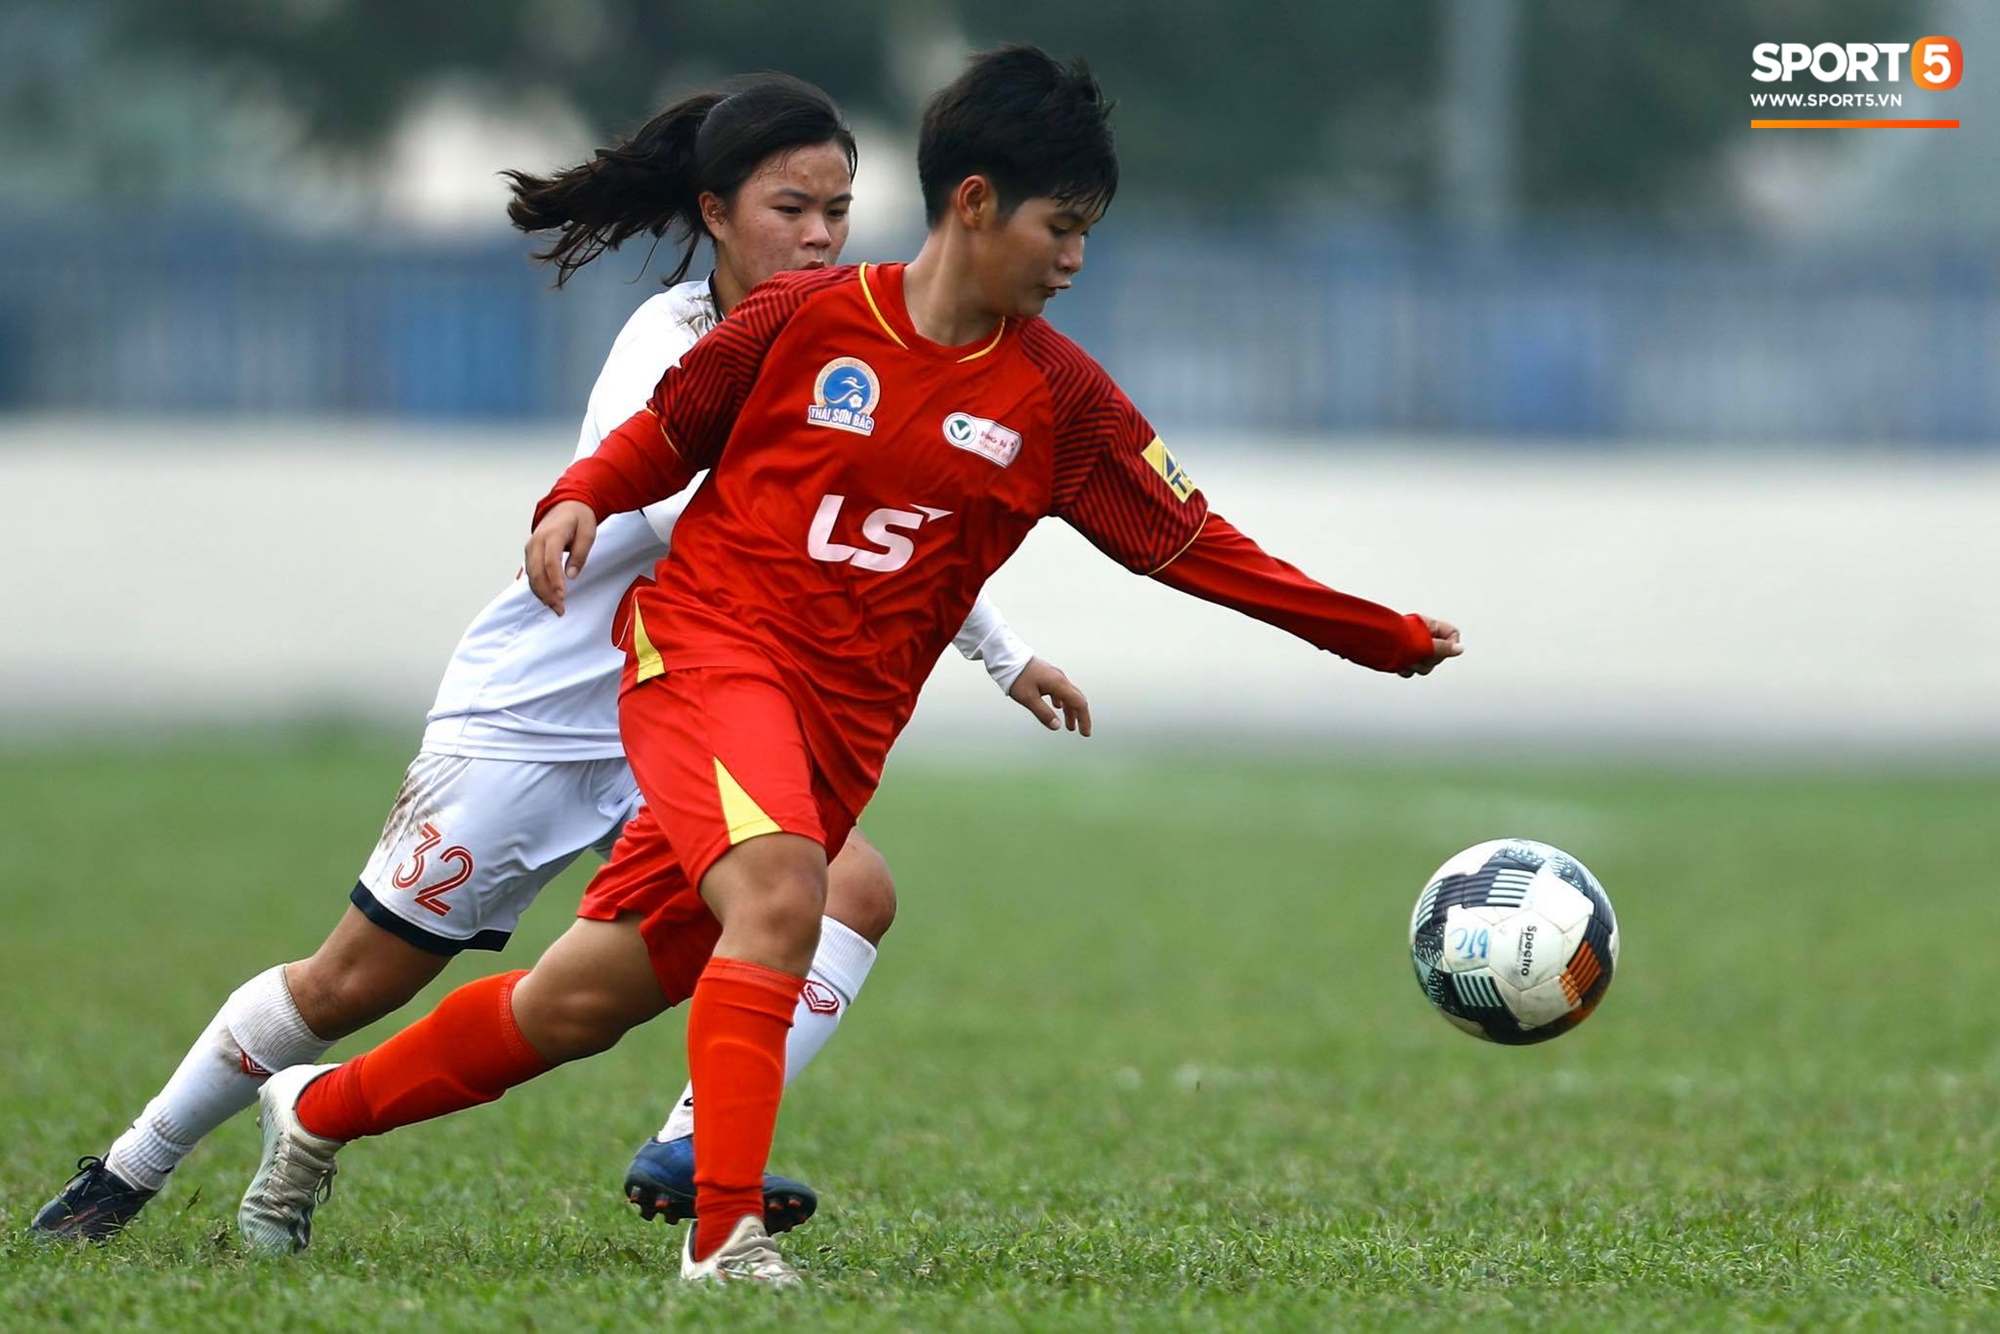 U19 nữ Hà Nội Watabe lấy lại phong độ, thắng đậm 4-0 trước U19 TP.HCM - Ảnh 2.